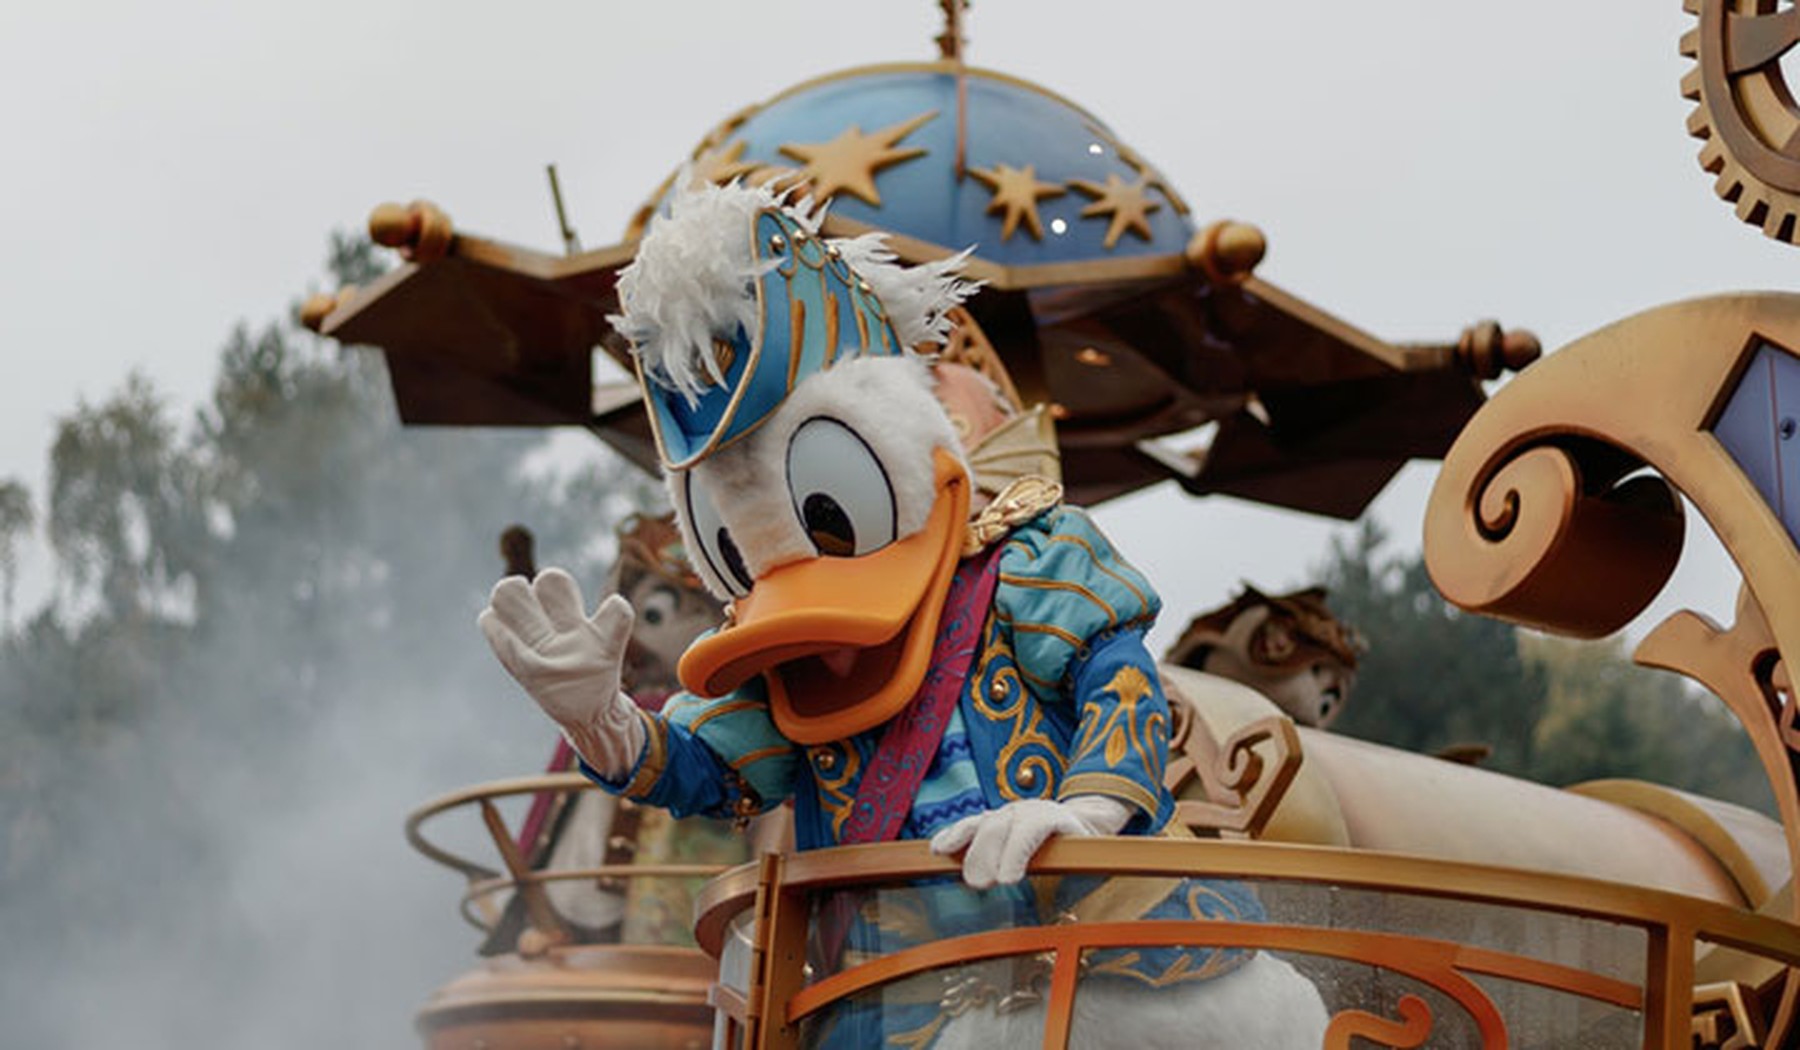 Primer plano del Pato Donald en su carroza de Disneyland París